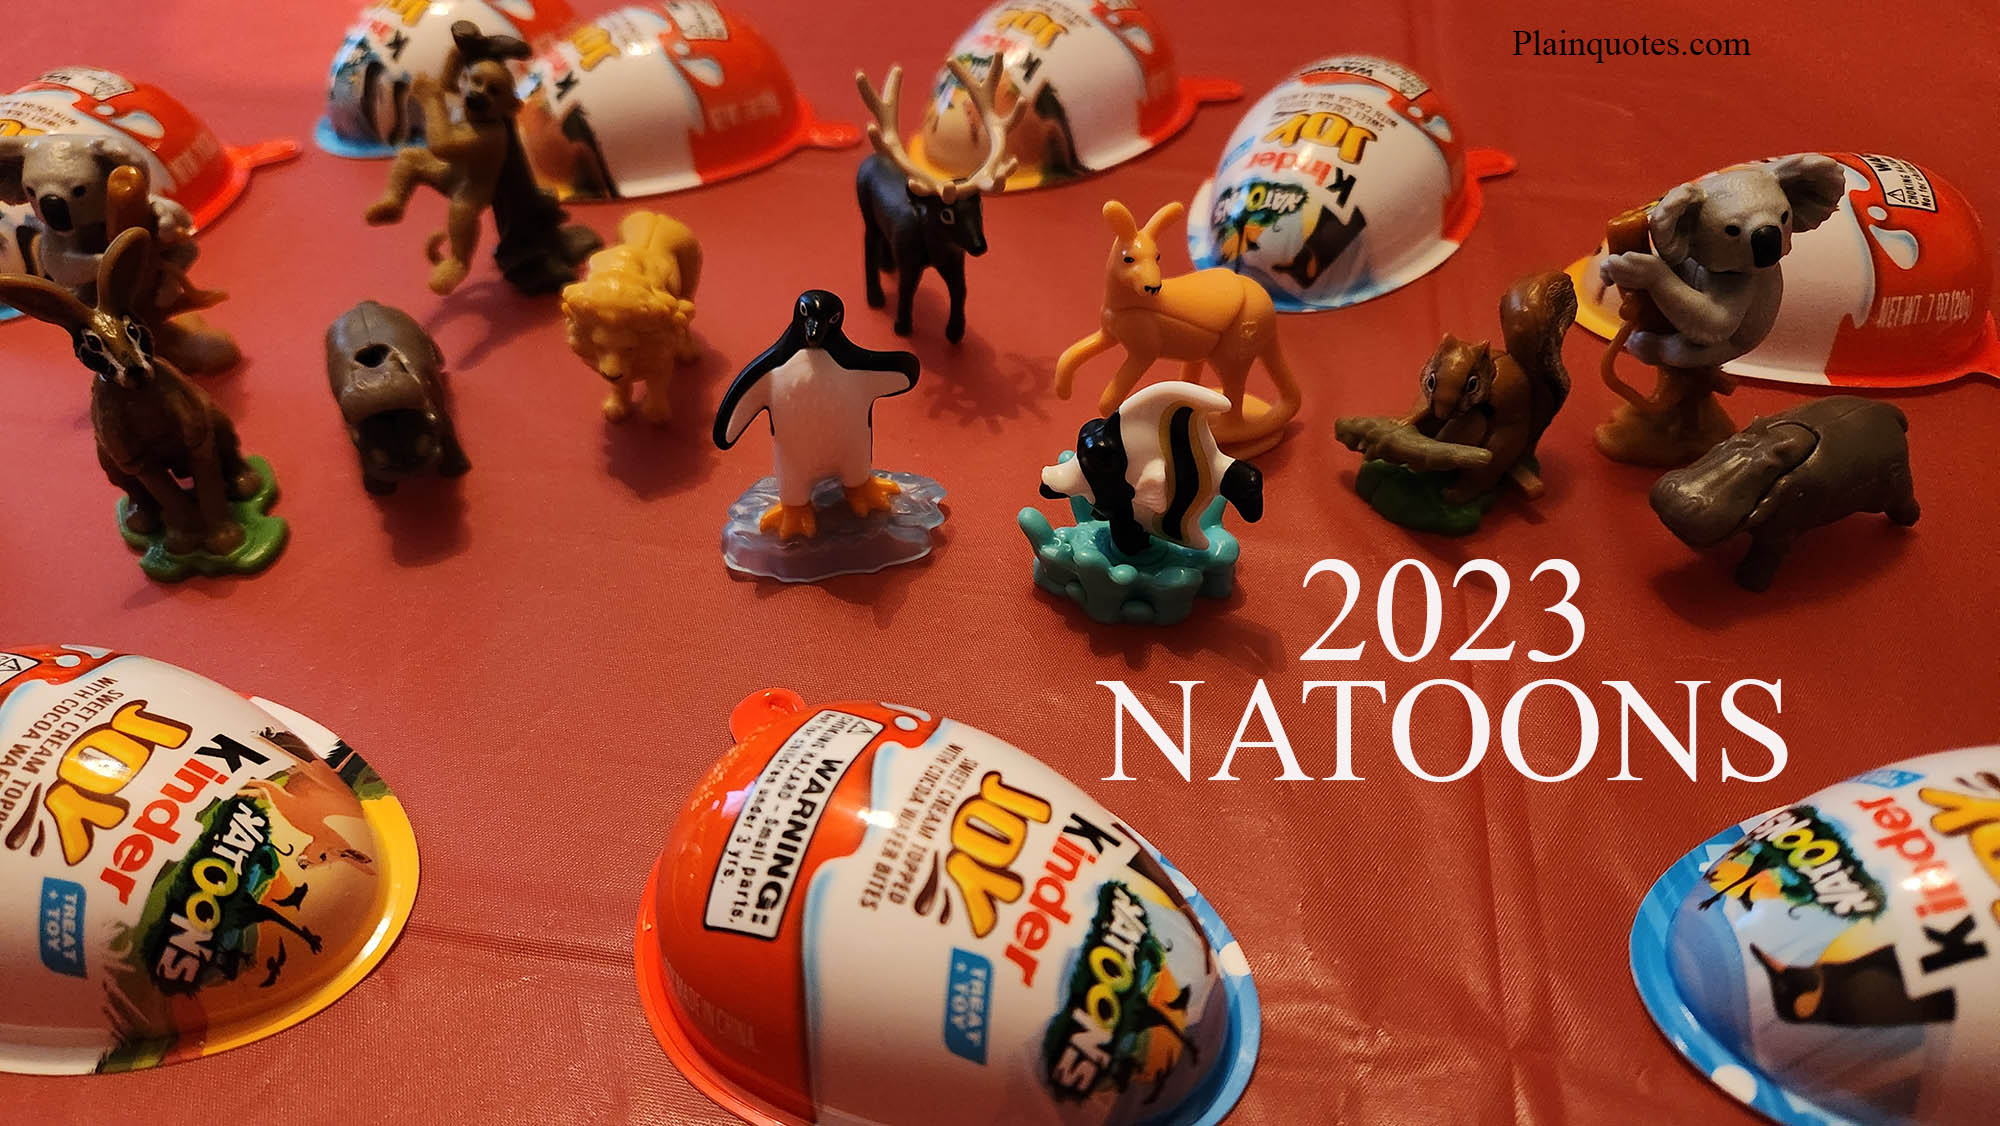 2023-natoons-kinder-joy-eggs